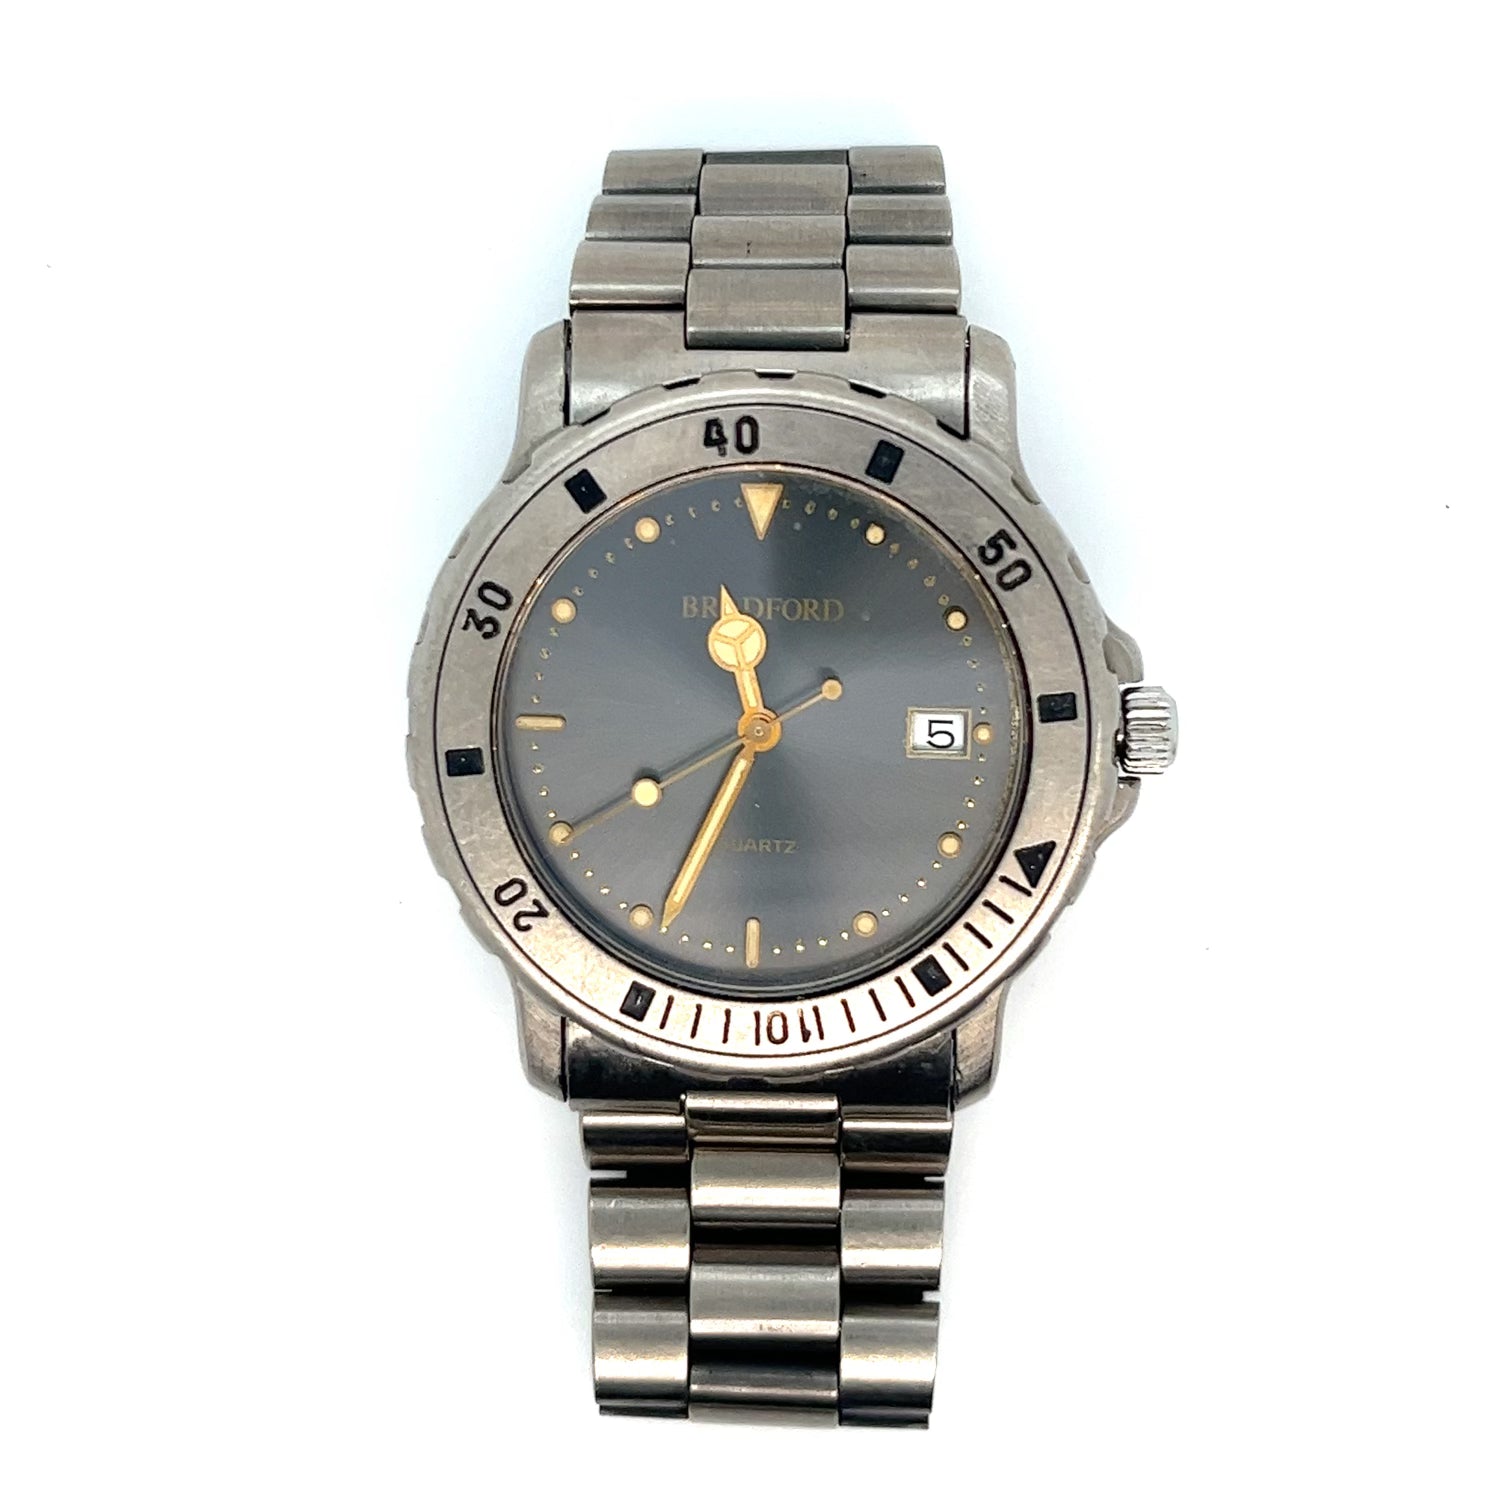 Bradford Titanium Diver's Watch